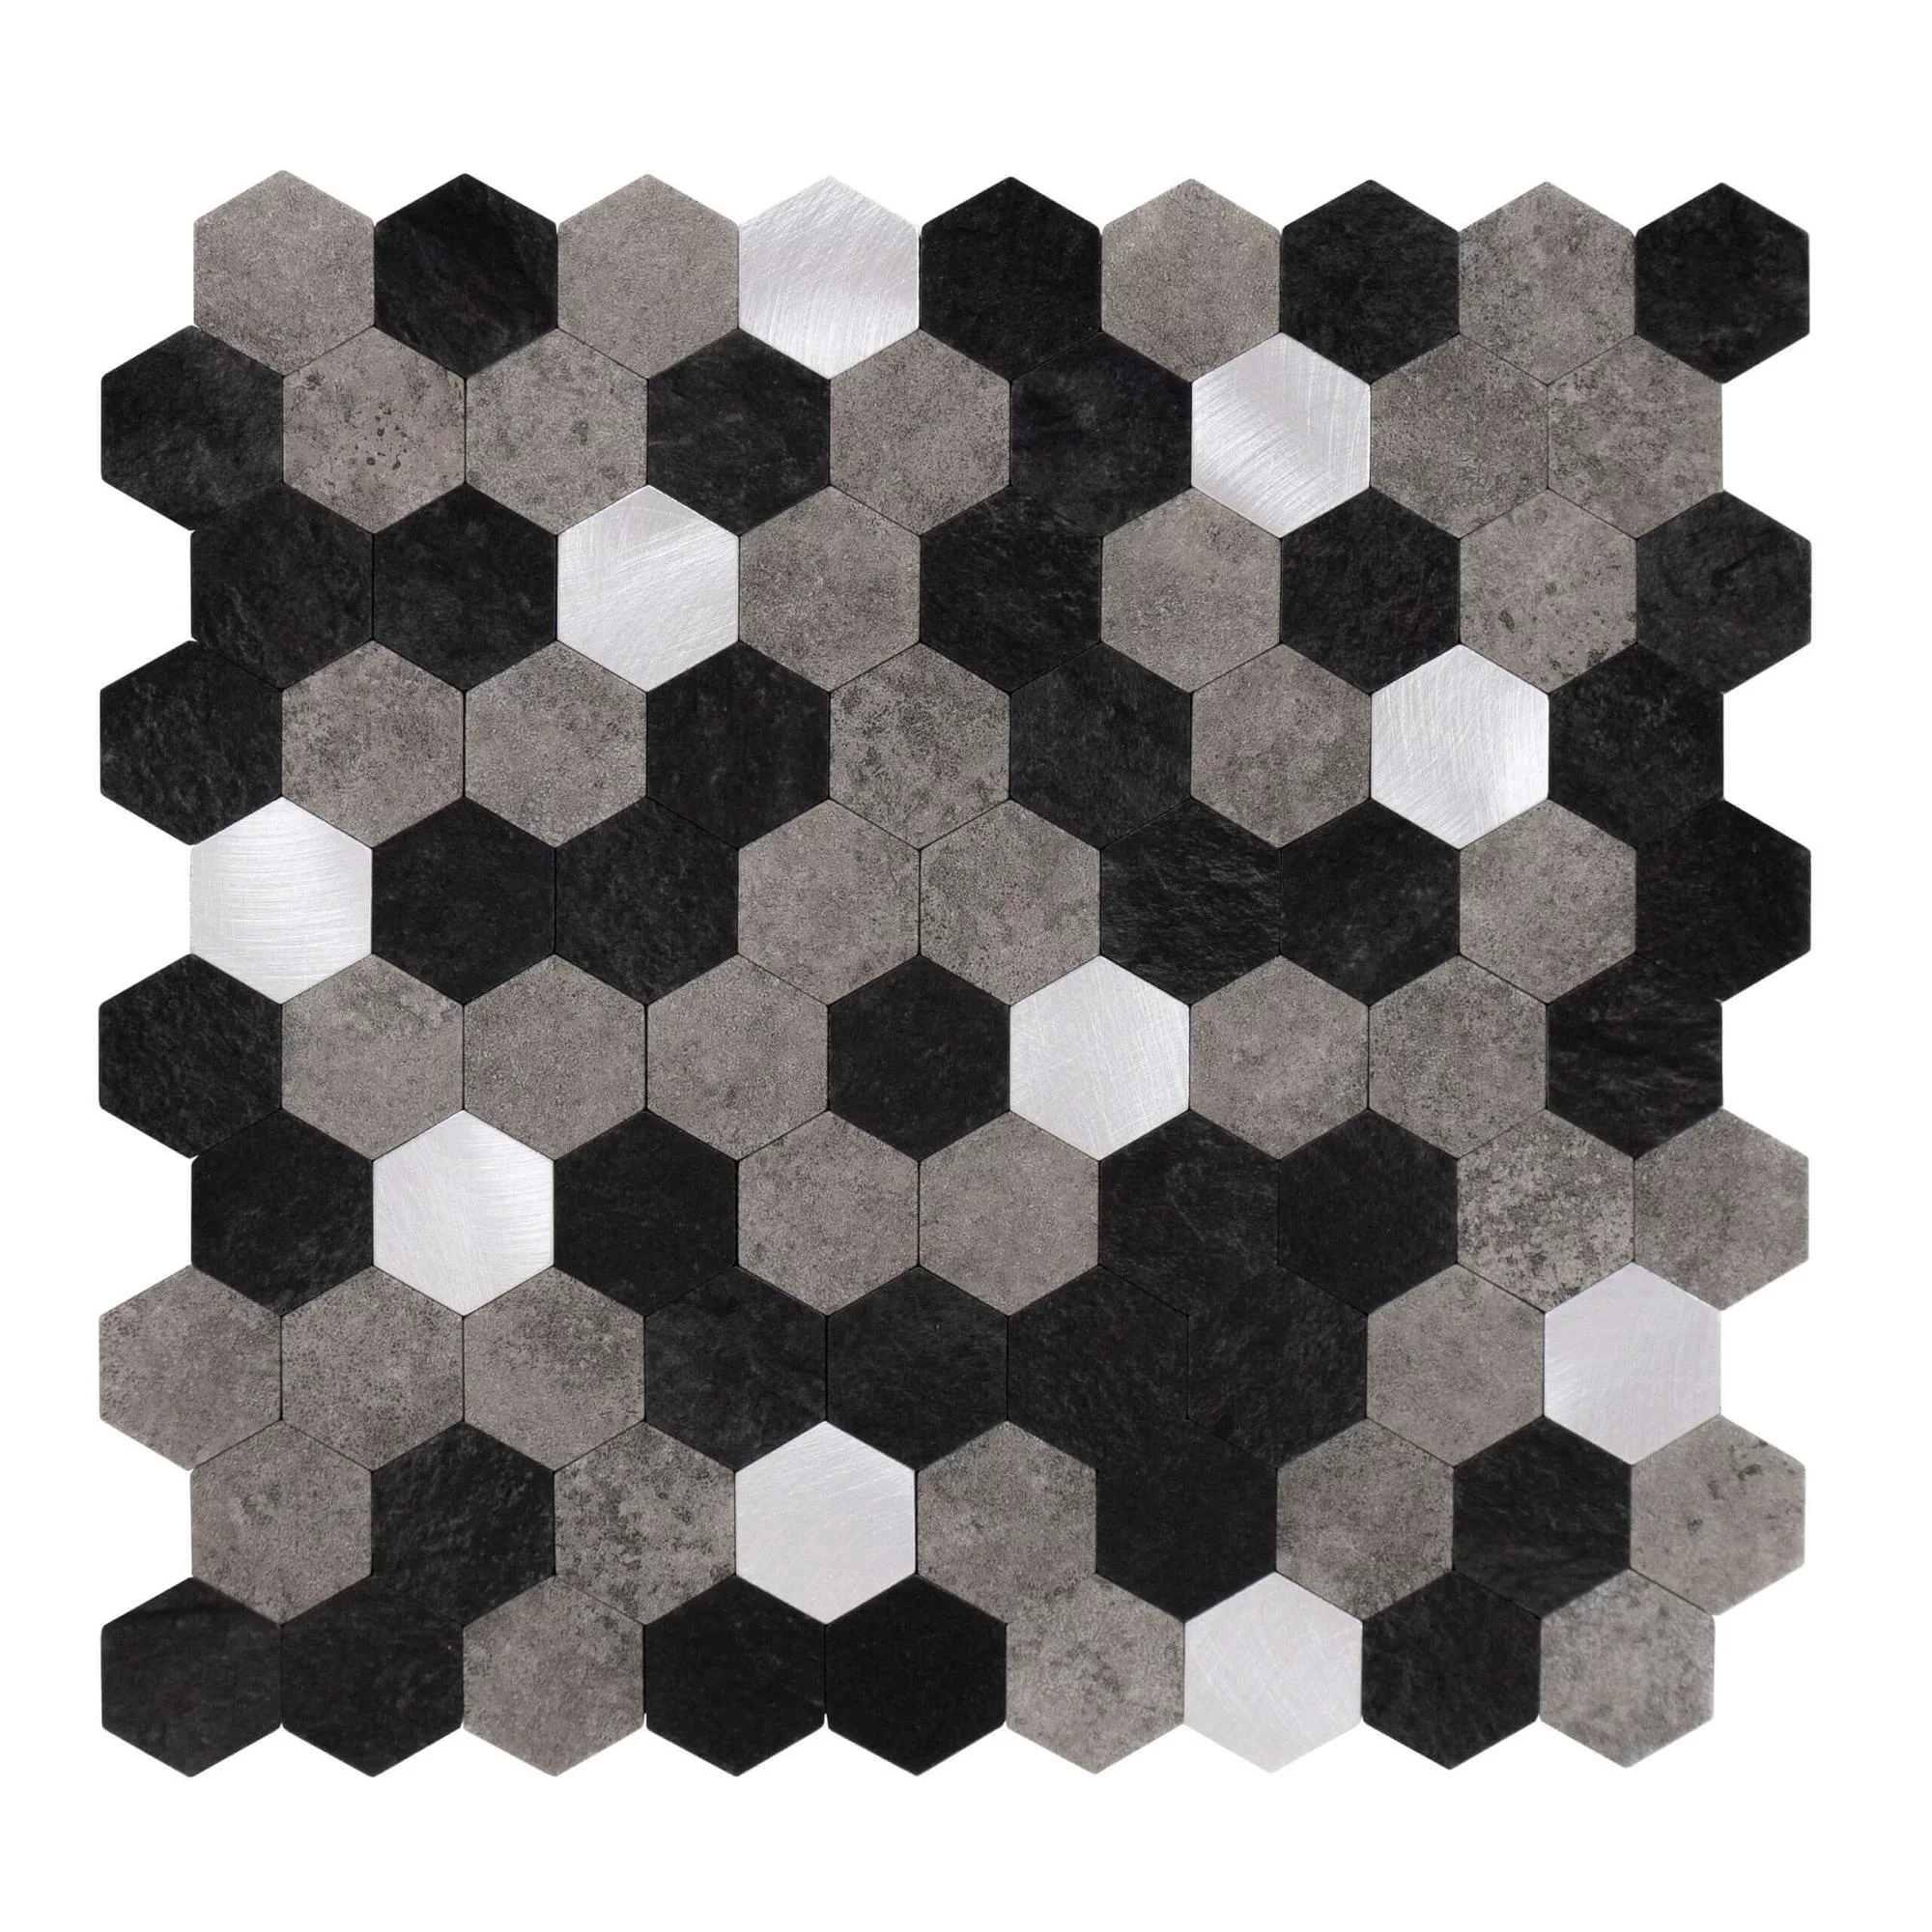 selbstklebende-fliesen-hexagon-form-0.88m².-11-stueck-steinoptik-schwarz-grau-silber